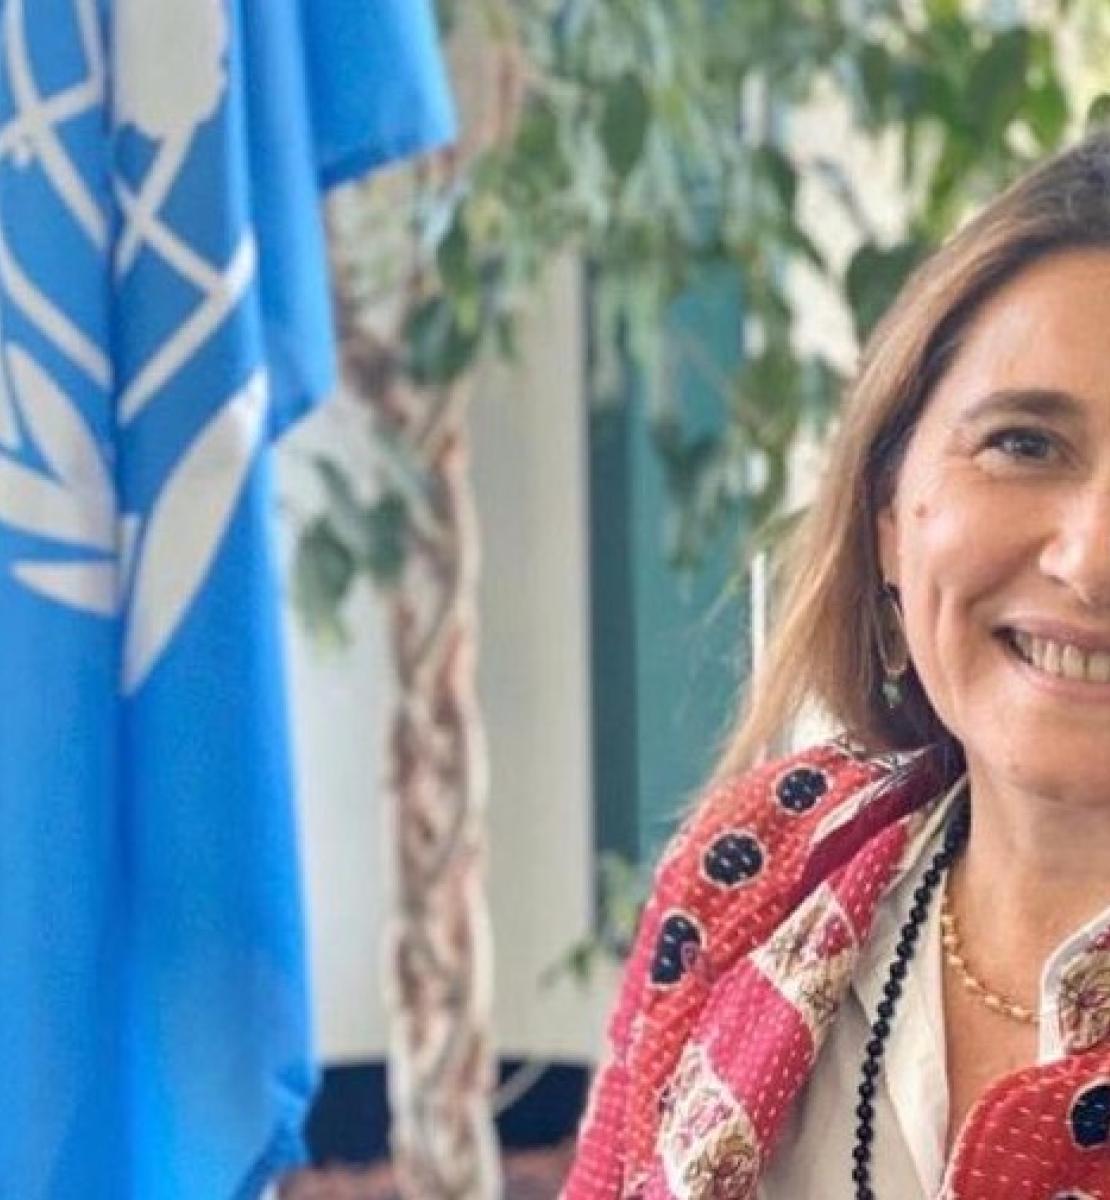 法国人纳塔莉·福斯蒂尔是新任的联合国驻摩洛哥协调员。